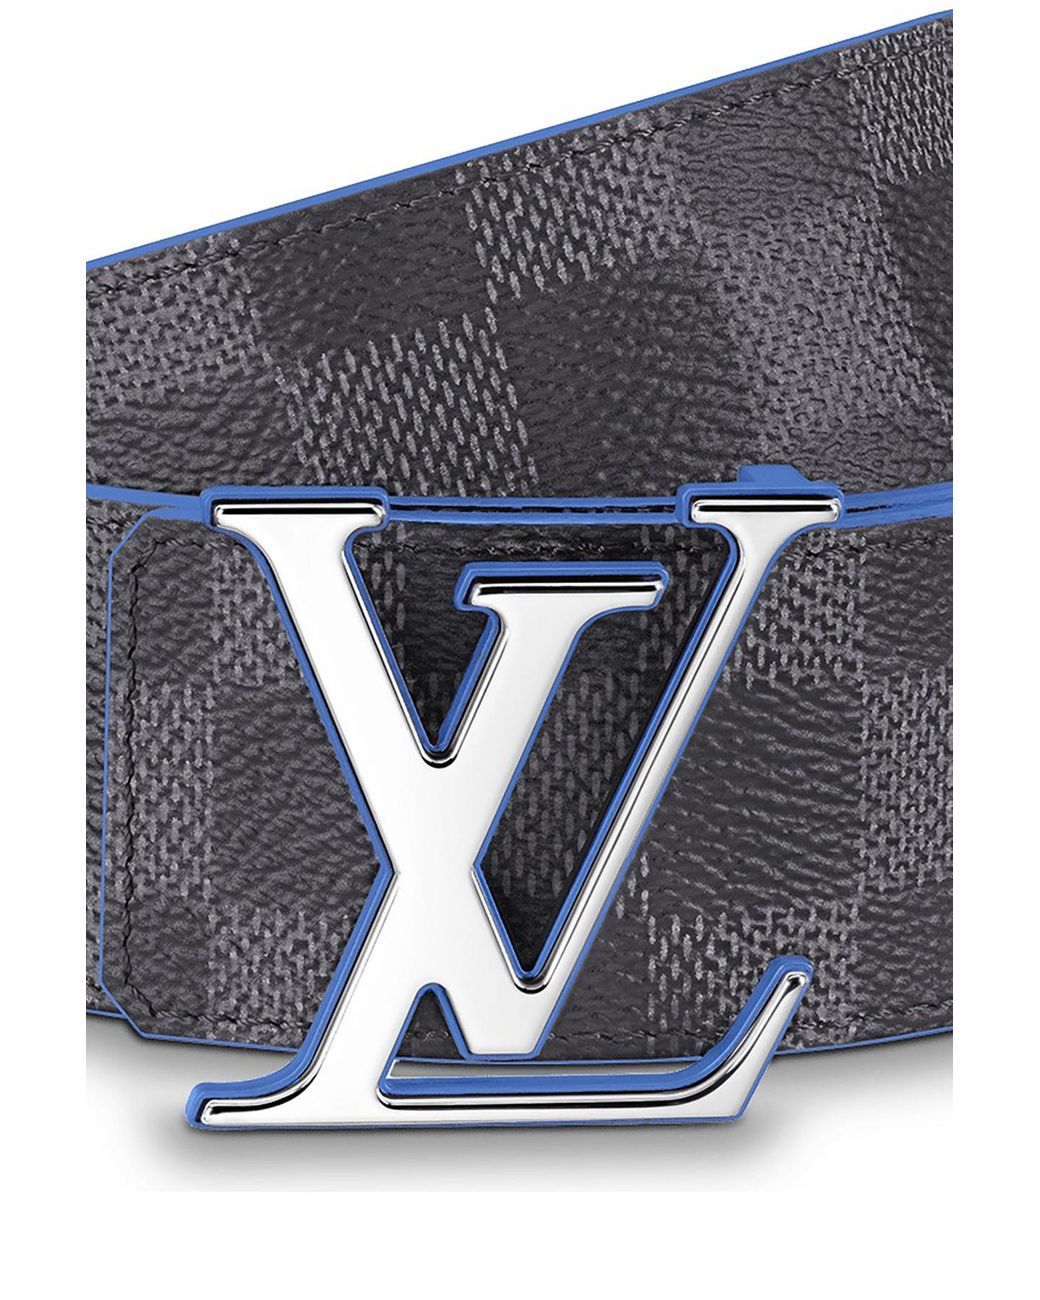 Louis Vuitton Initiales Reversible Belt - Cobalt Blue